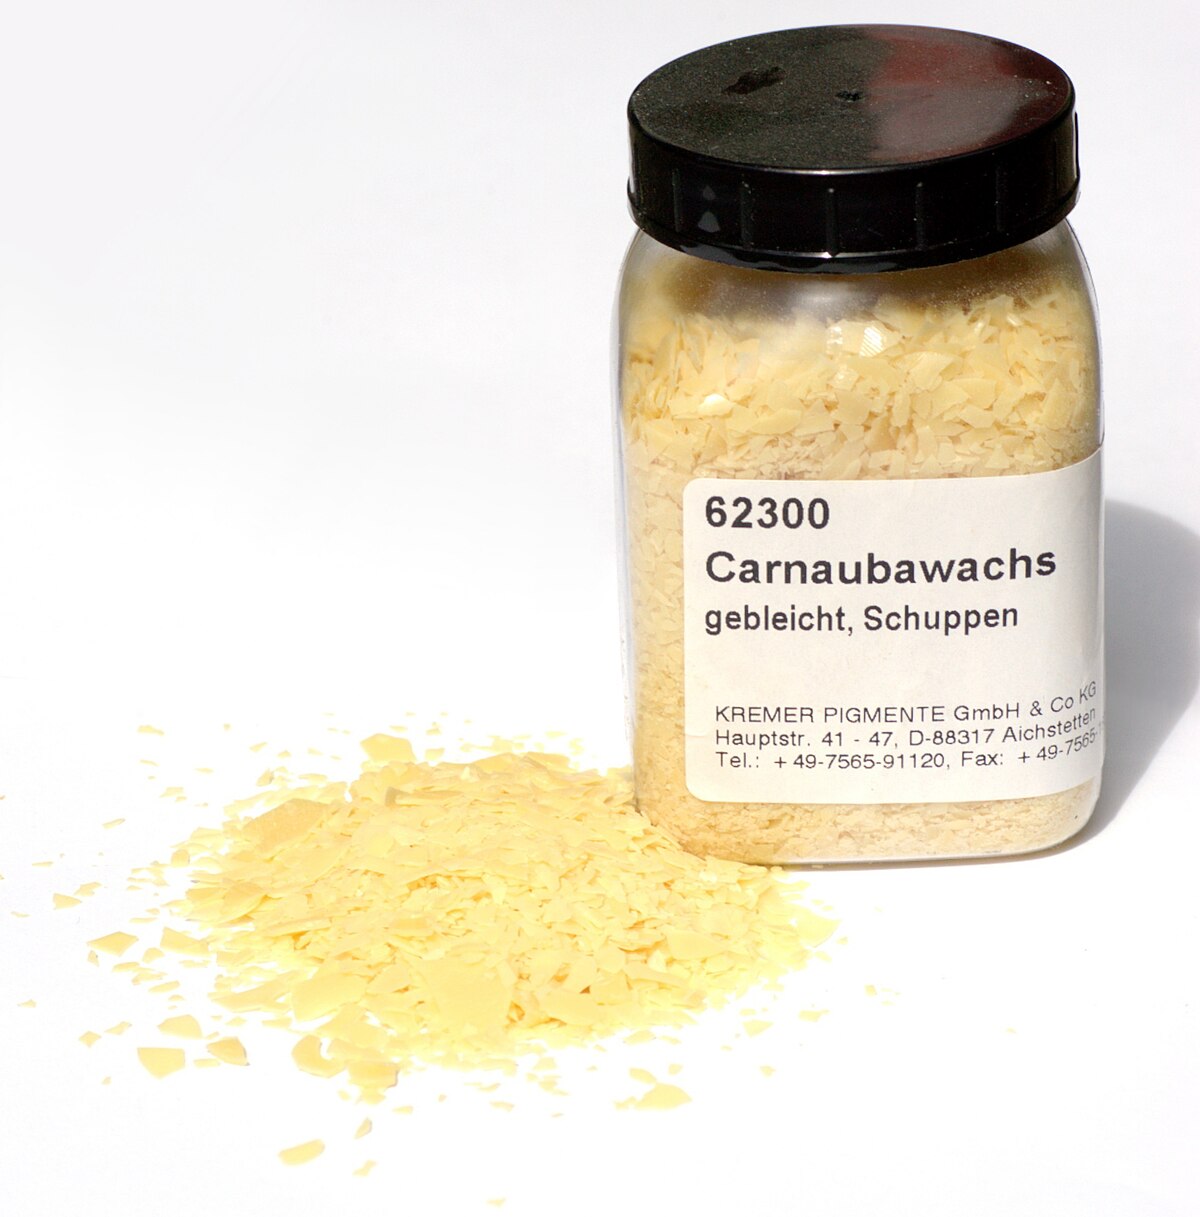 Carnauba wax - Wikipedia